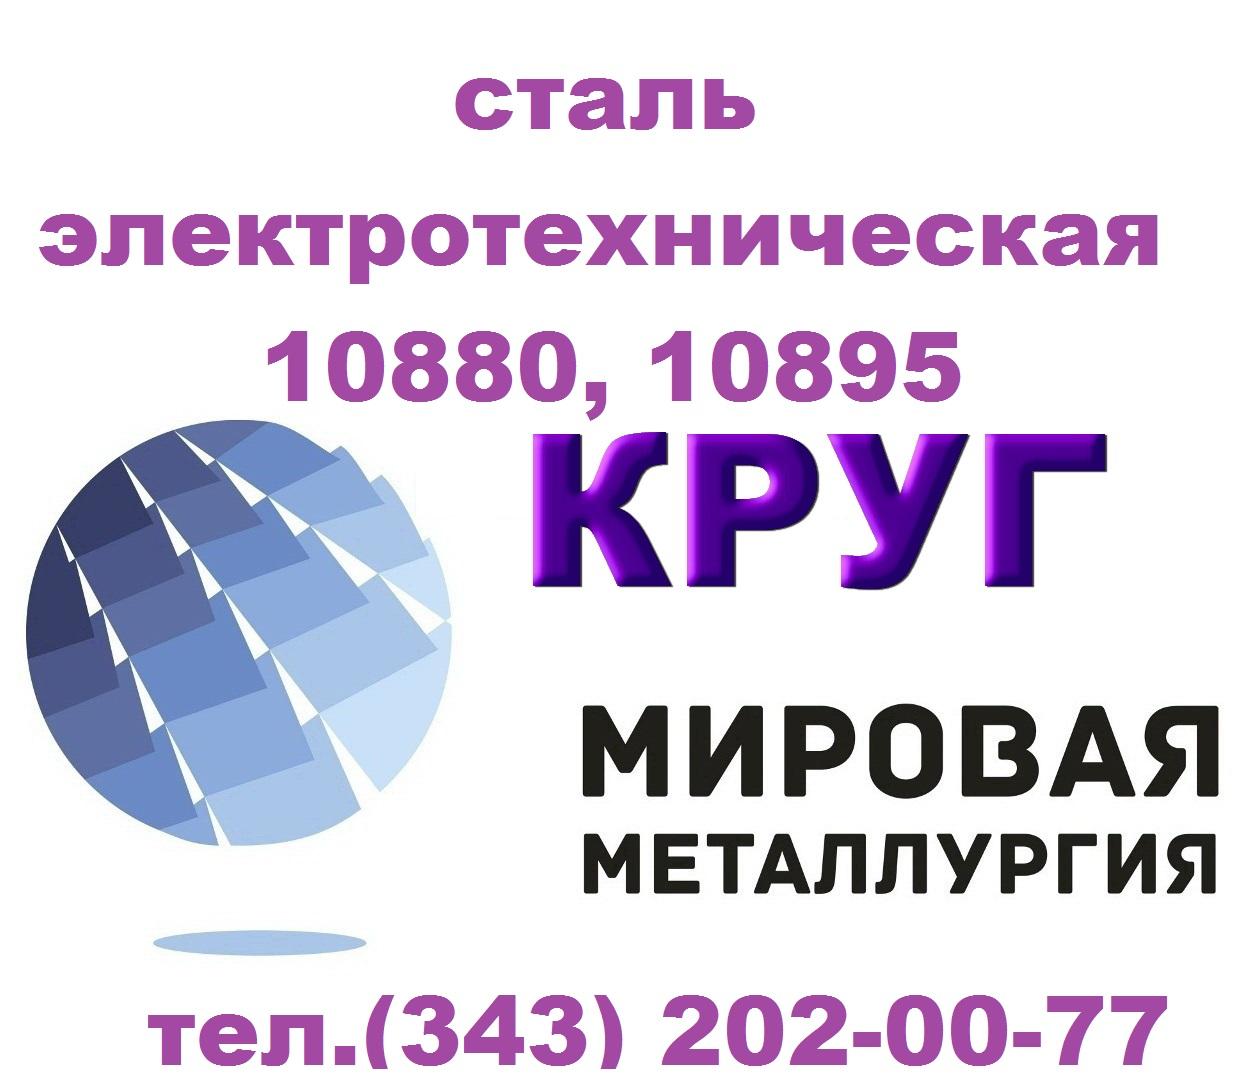 Продам сталь электротехническую 10880, 10895 ГОСТ 11036-75. Свердловская обл.